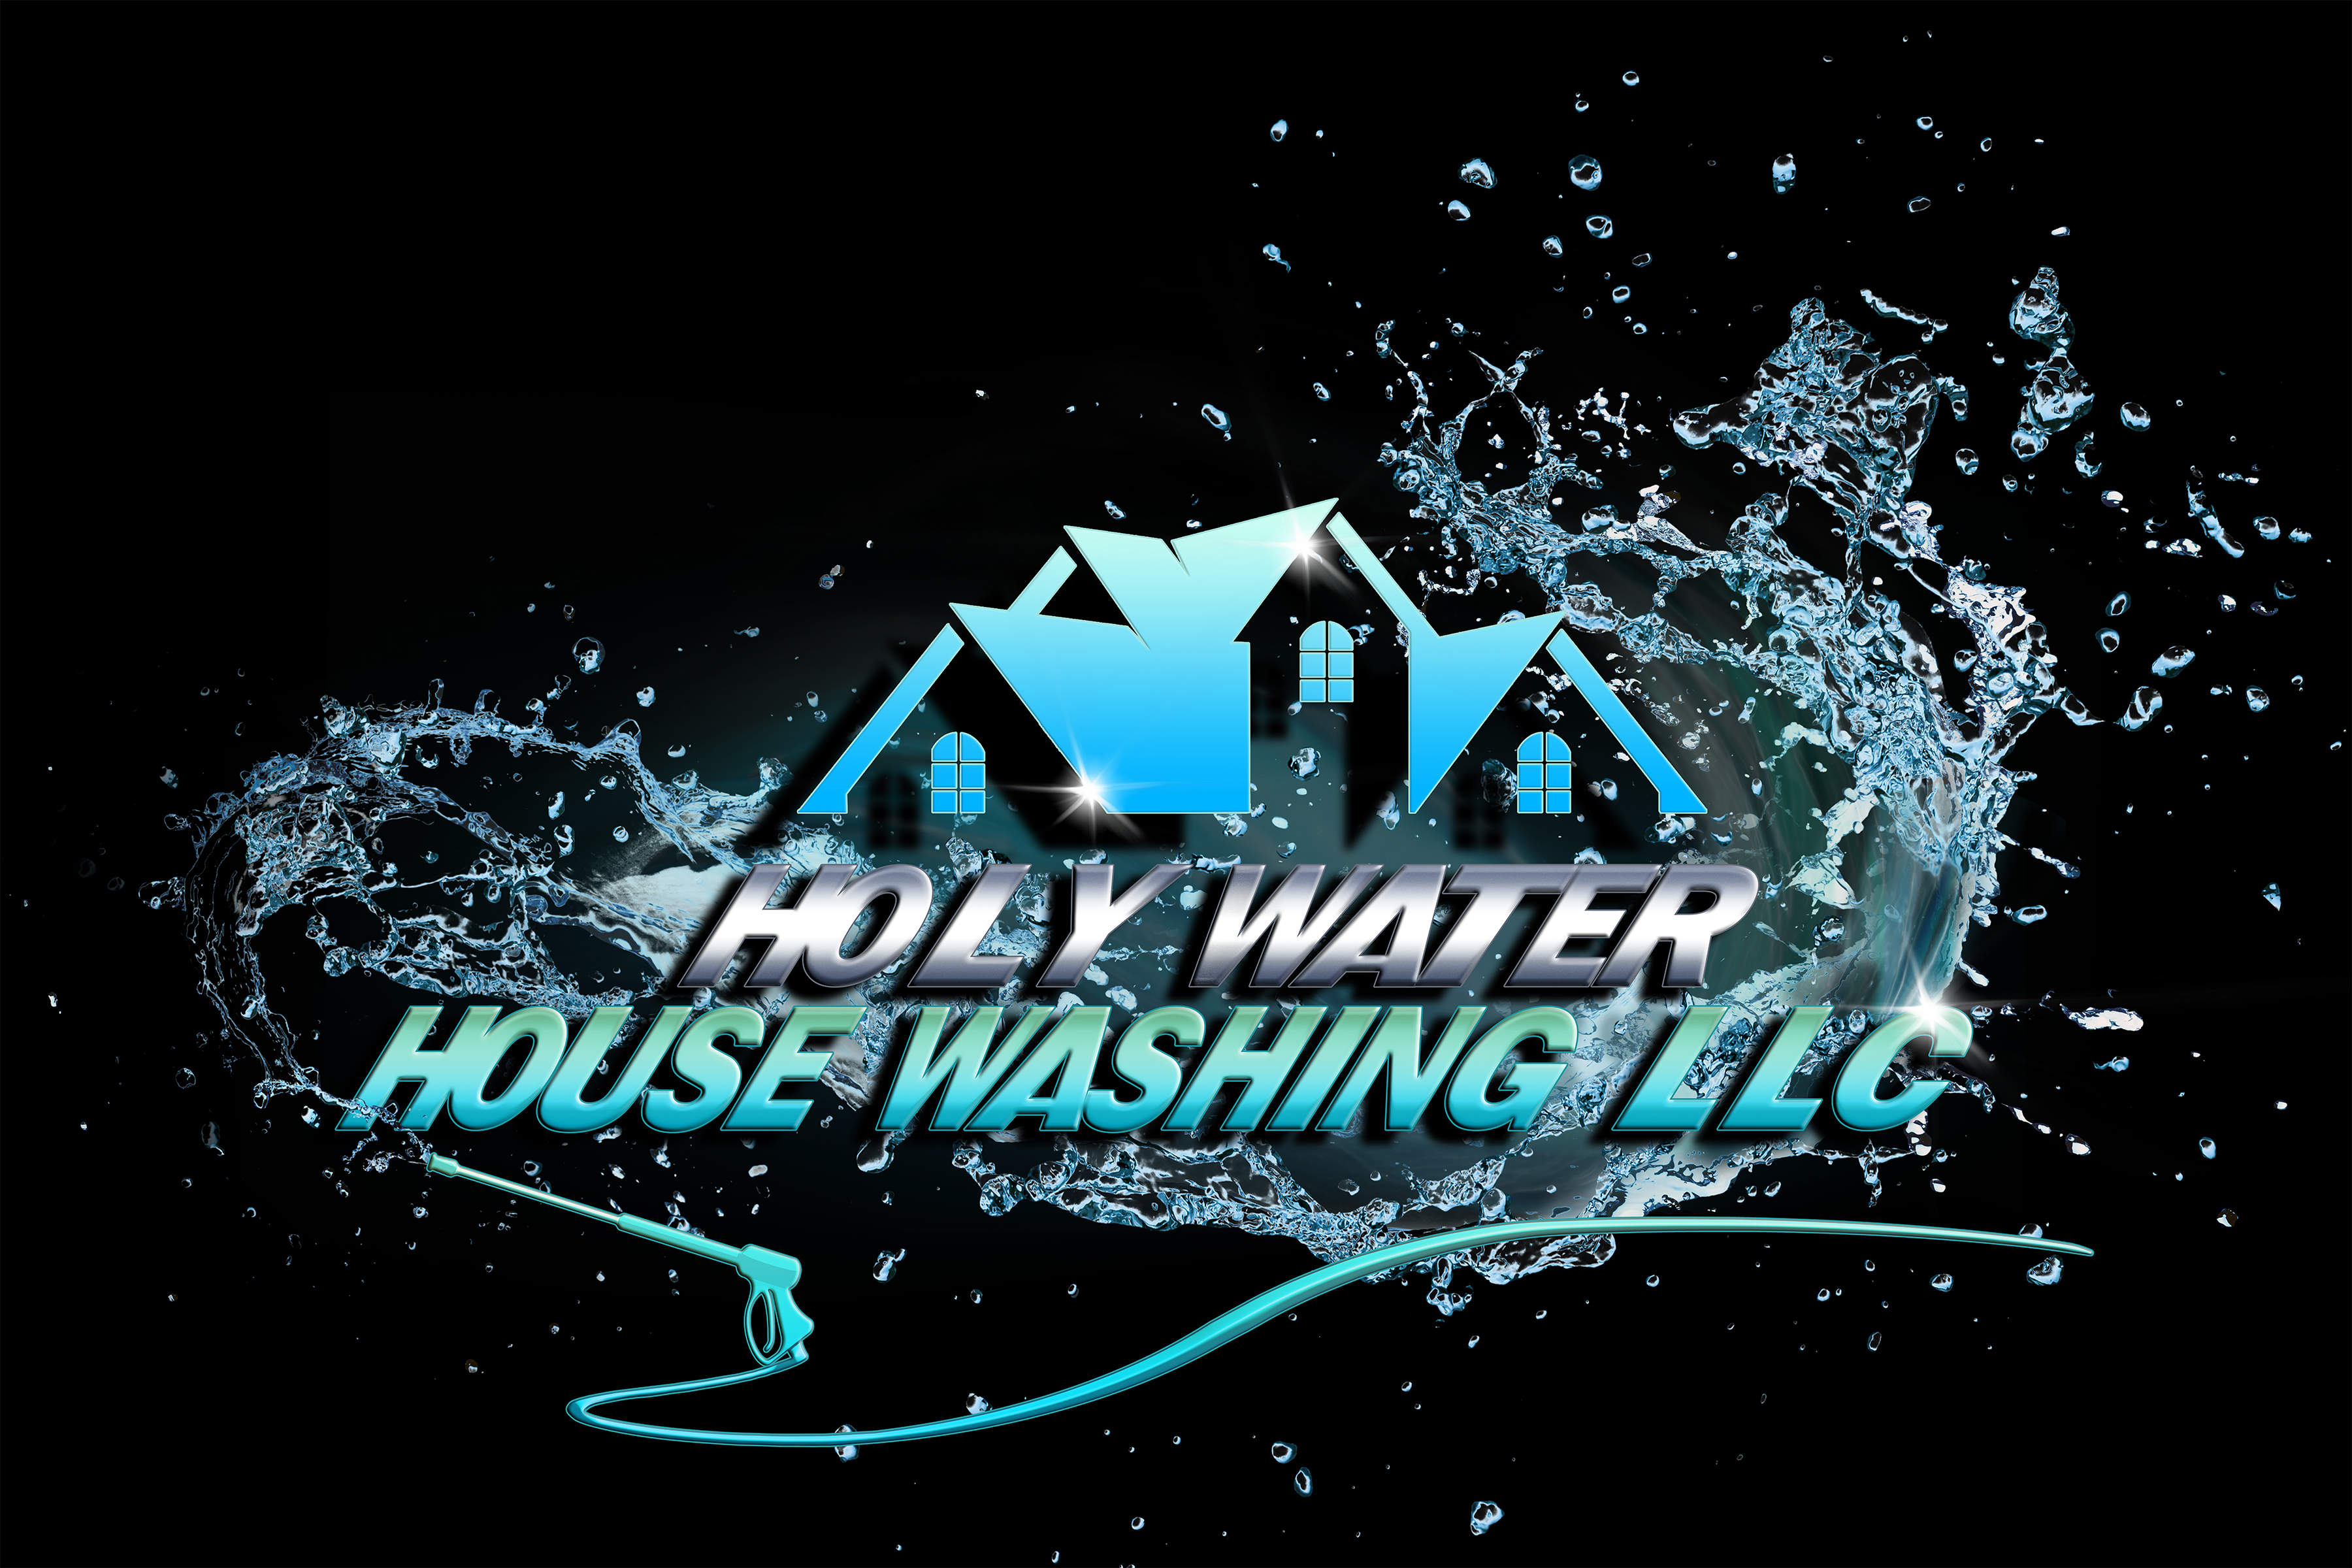 Holy Water House Washing LLC Logo